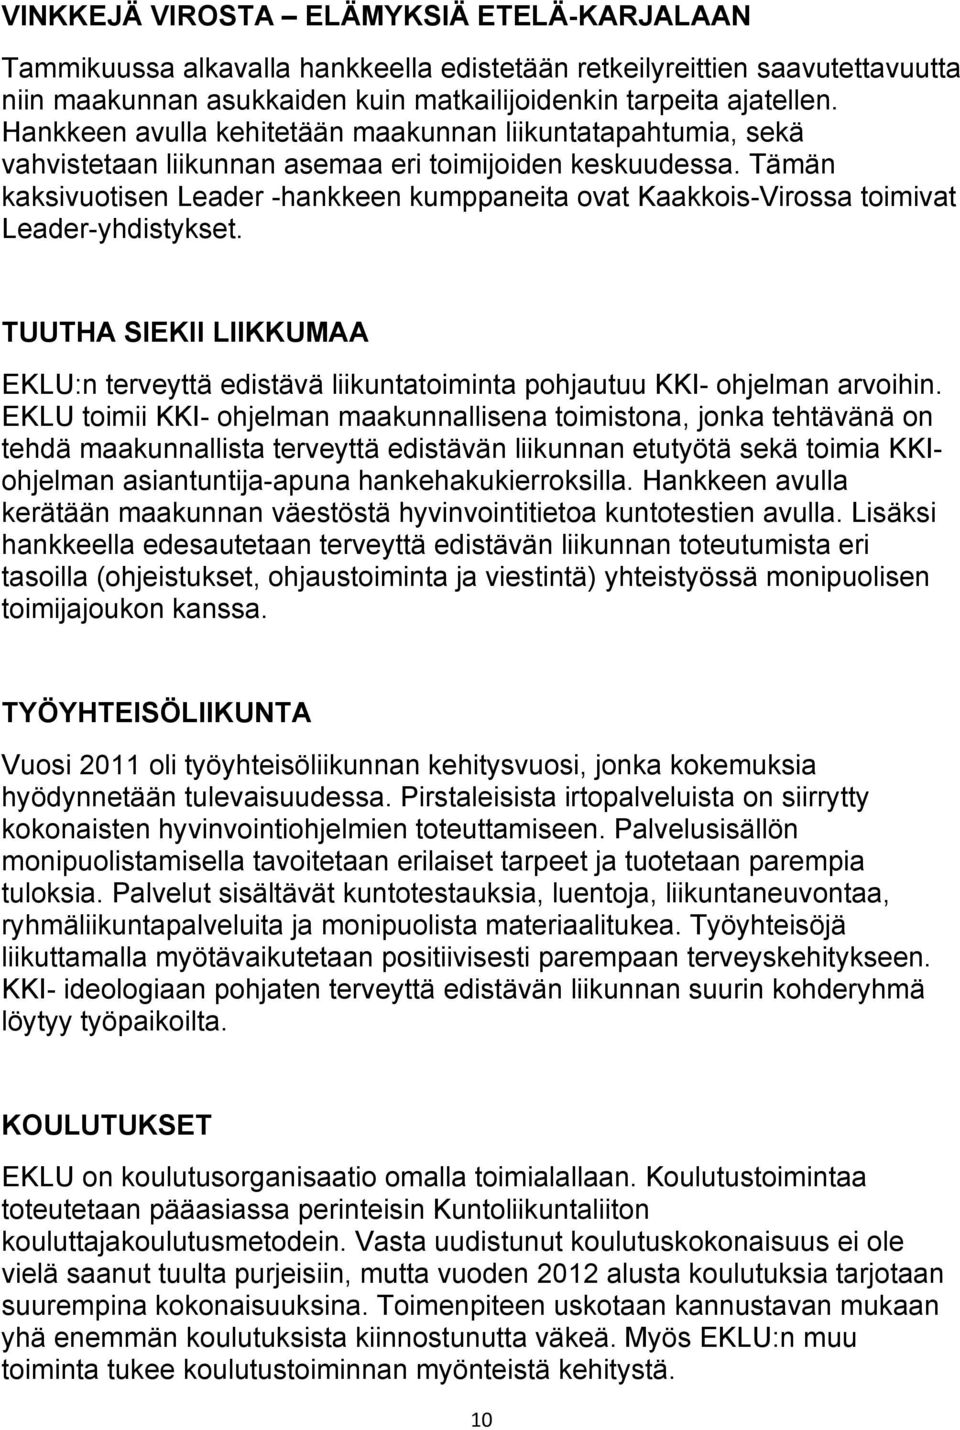 Tämän kaksivuotisen Leader -hankkeen kumppaneita ovat Kaakkois-Virossa toimivat Leader-yhdistykset. TUUTHA SIEKII LIIKKUMAA EKLU:n terveyttä edistävä liikuntatoiminta pohjautuu KKI- ohjelman arvoihin.